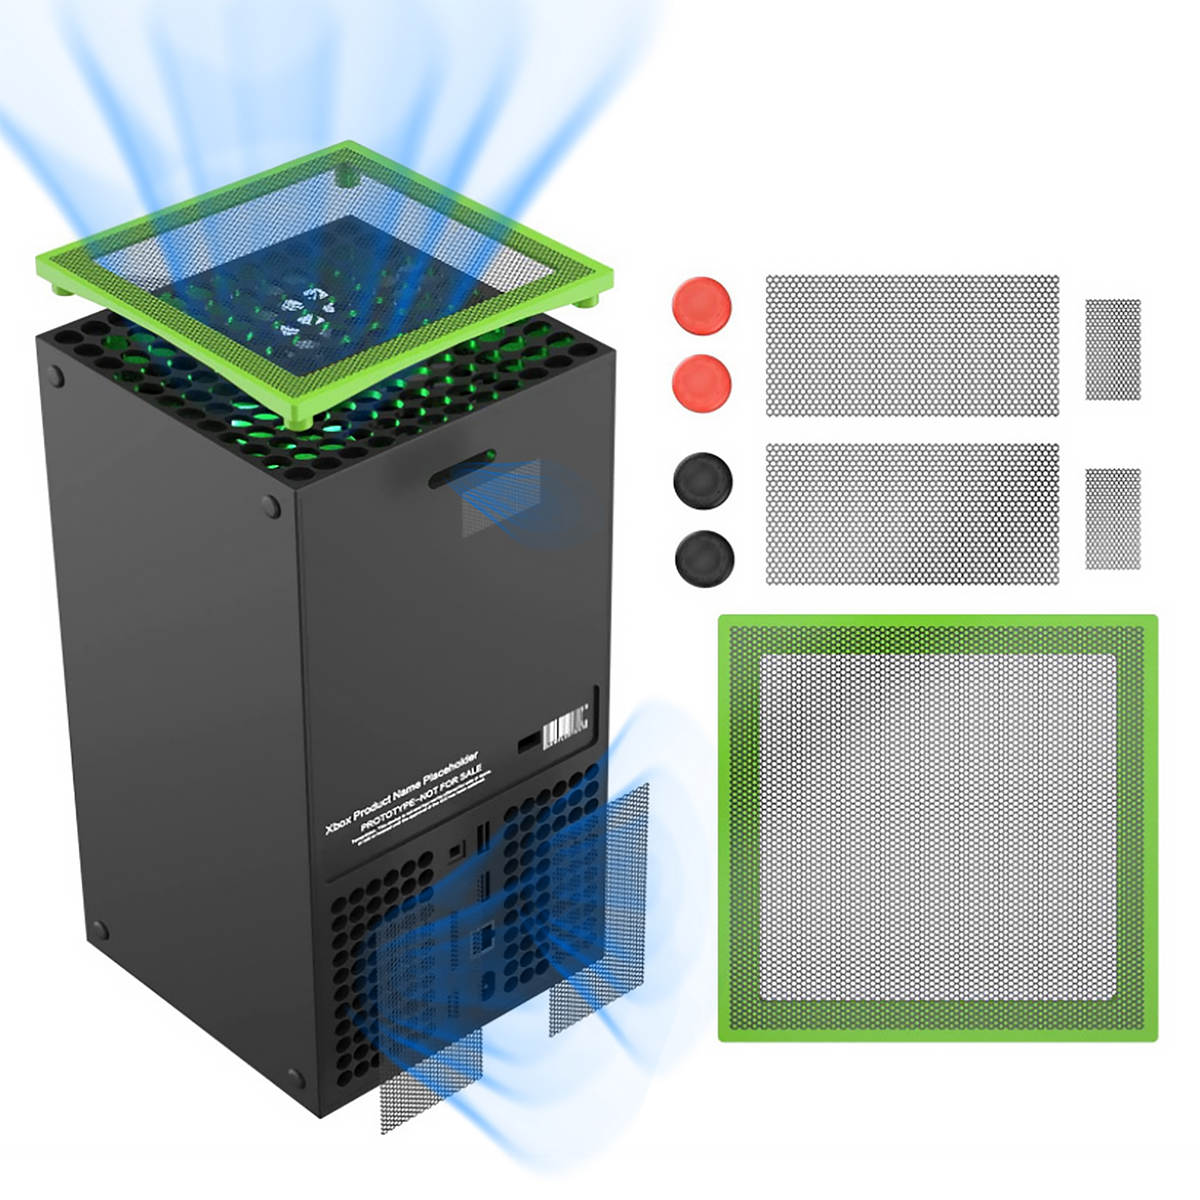 TADOW Staubnetz Für Konsolenzubehör, Multifunktionales Grün Xbox, und Grau Staubfilter-Kühlungsset